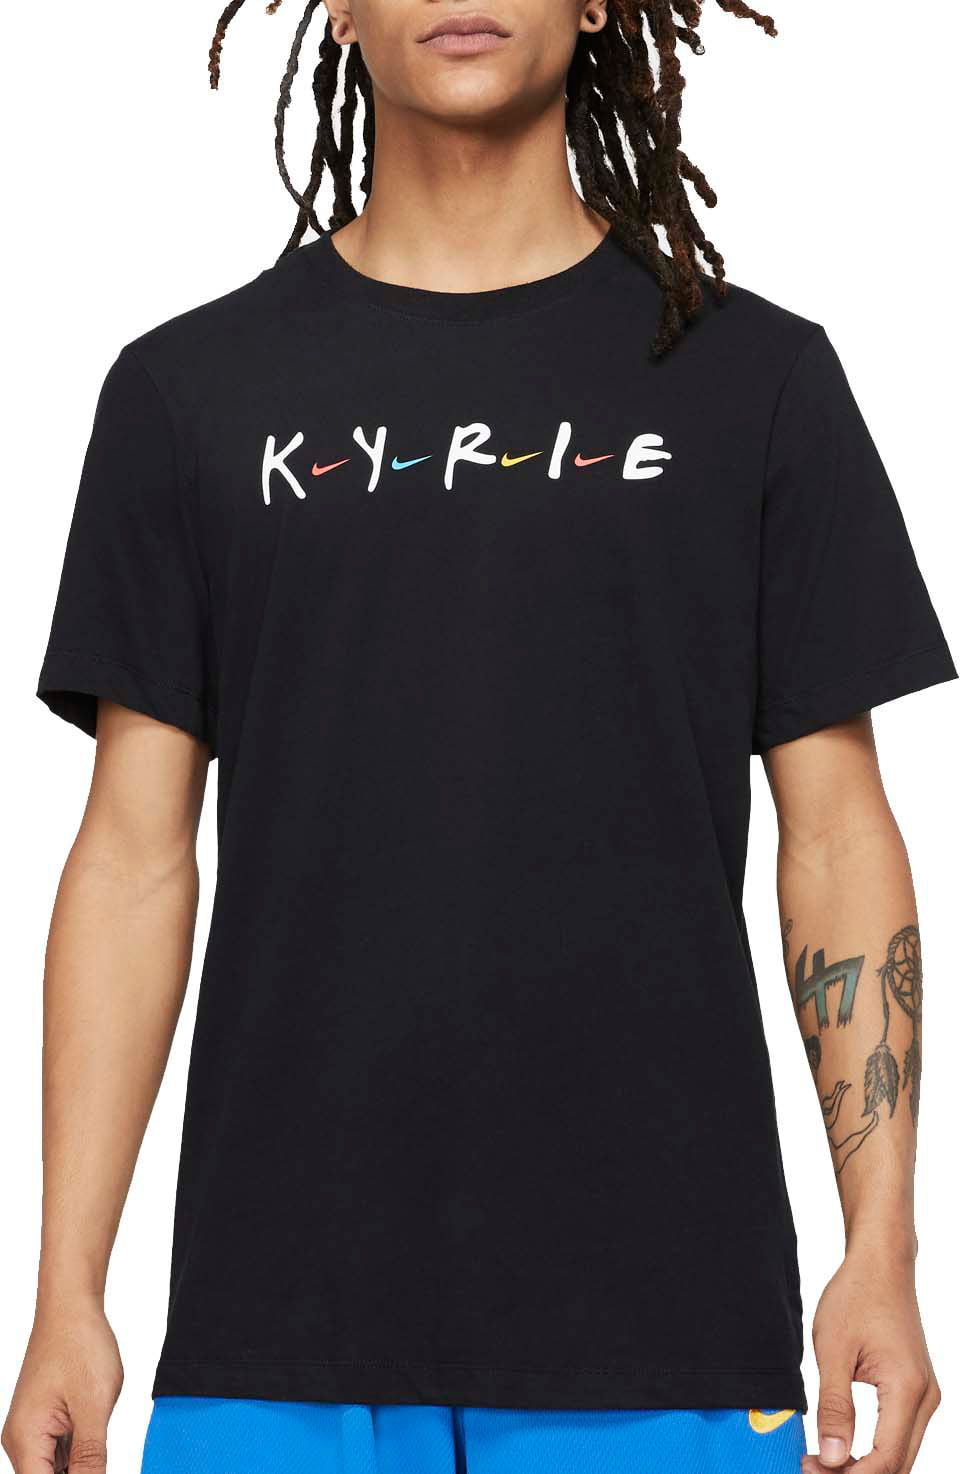 kyrie x friends shirt